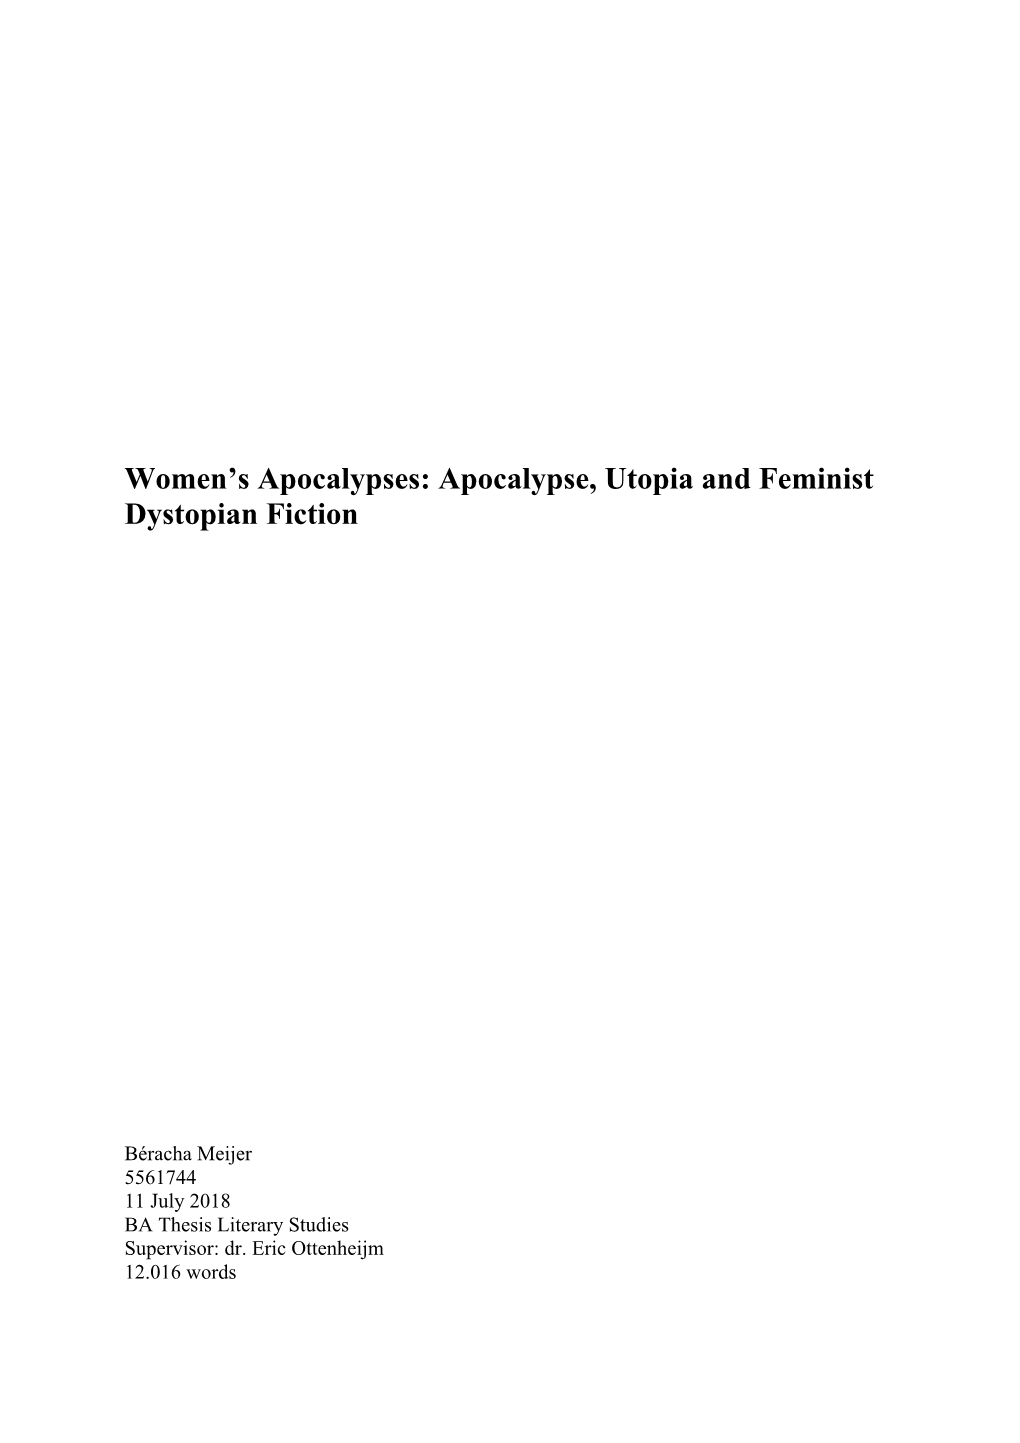 Women's Apocalypses: Apocalypse, Utopia and Feminist Dystopian Fiction